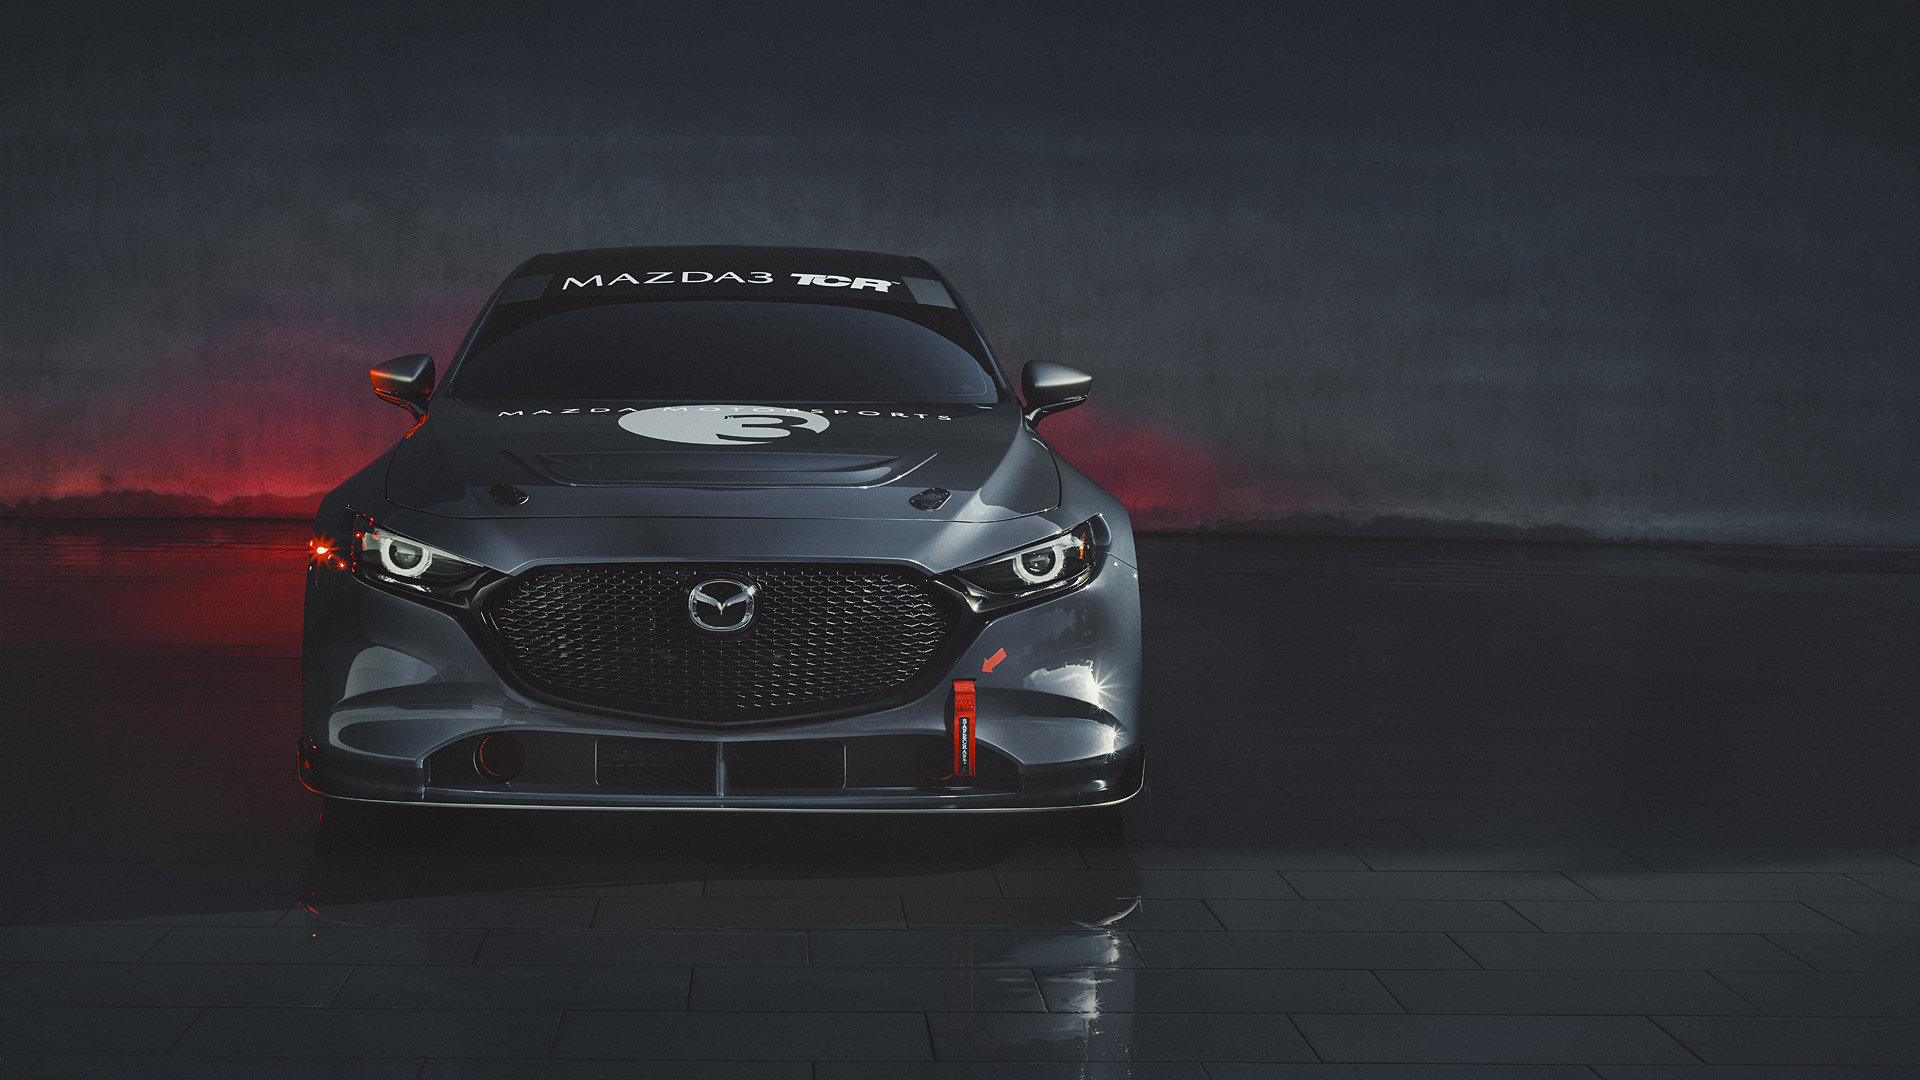  2020 Mazda 3 TCR Wallpaper.